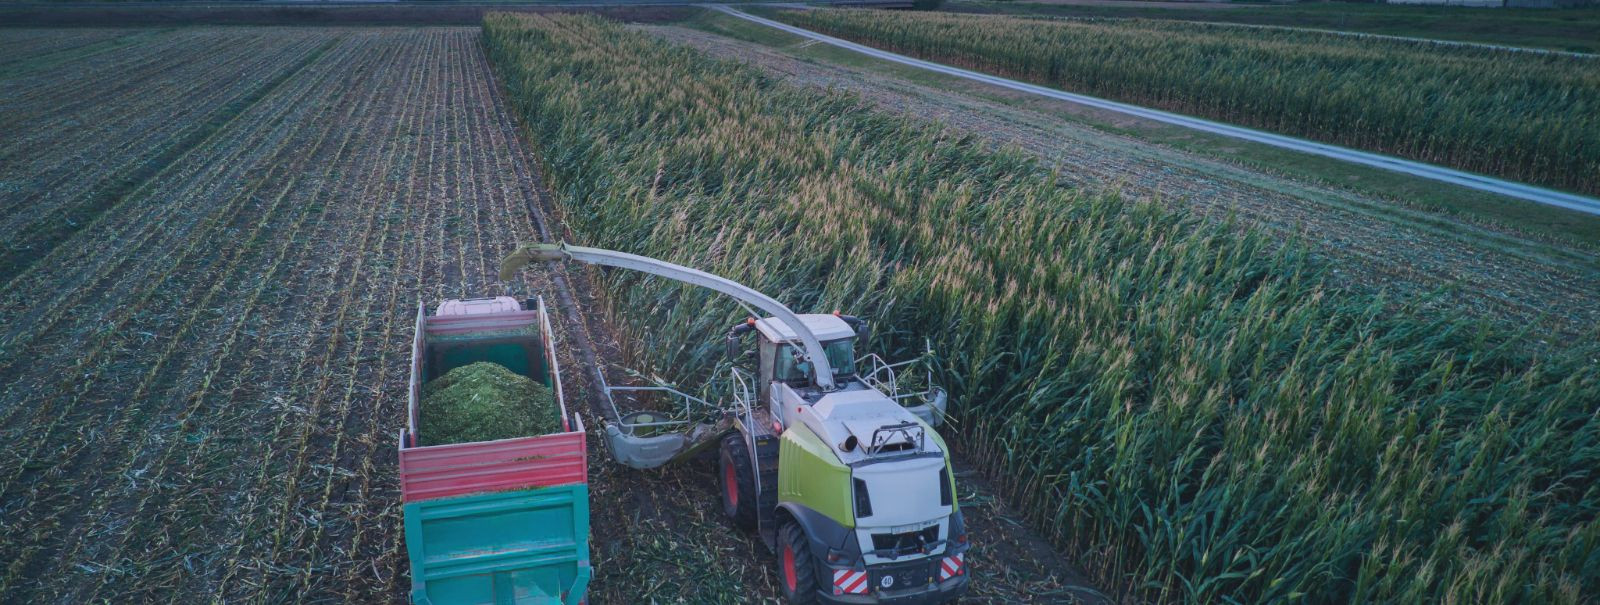 RAIGO LEMBINEN FIE on oma tegevusega keskendunud põllumajandusele ja põllukultuuride kasvatamisele alates 2012. aastast. Ettevõtte algusaegadel oli meie eesmärk